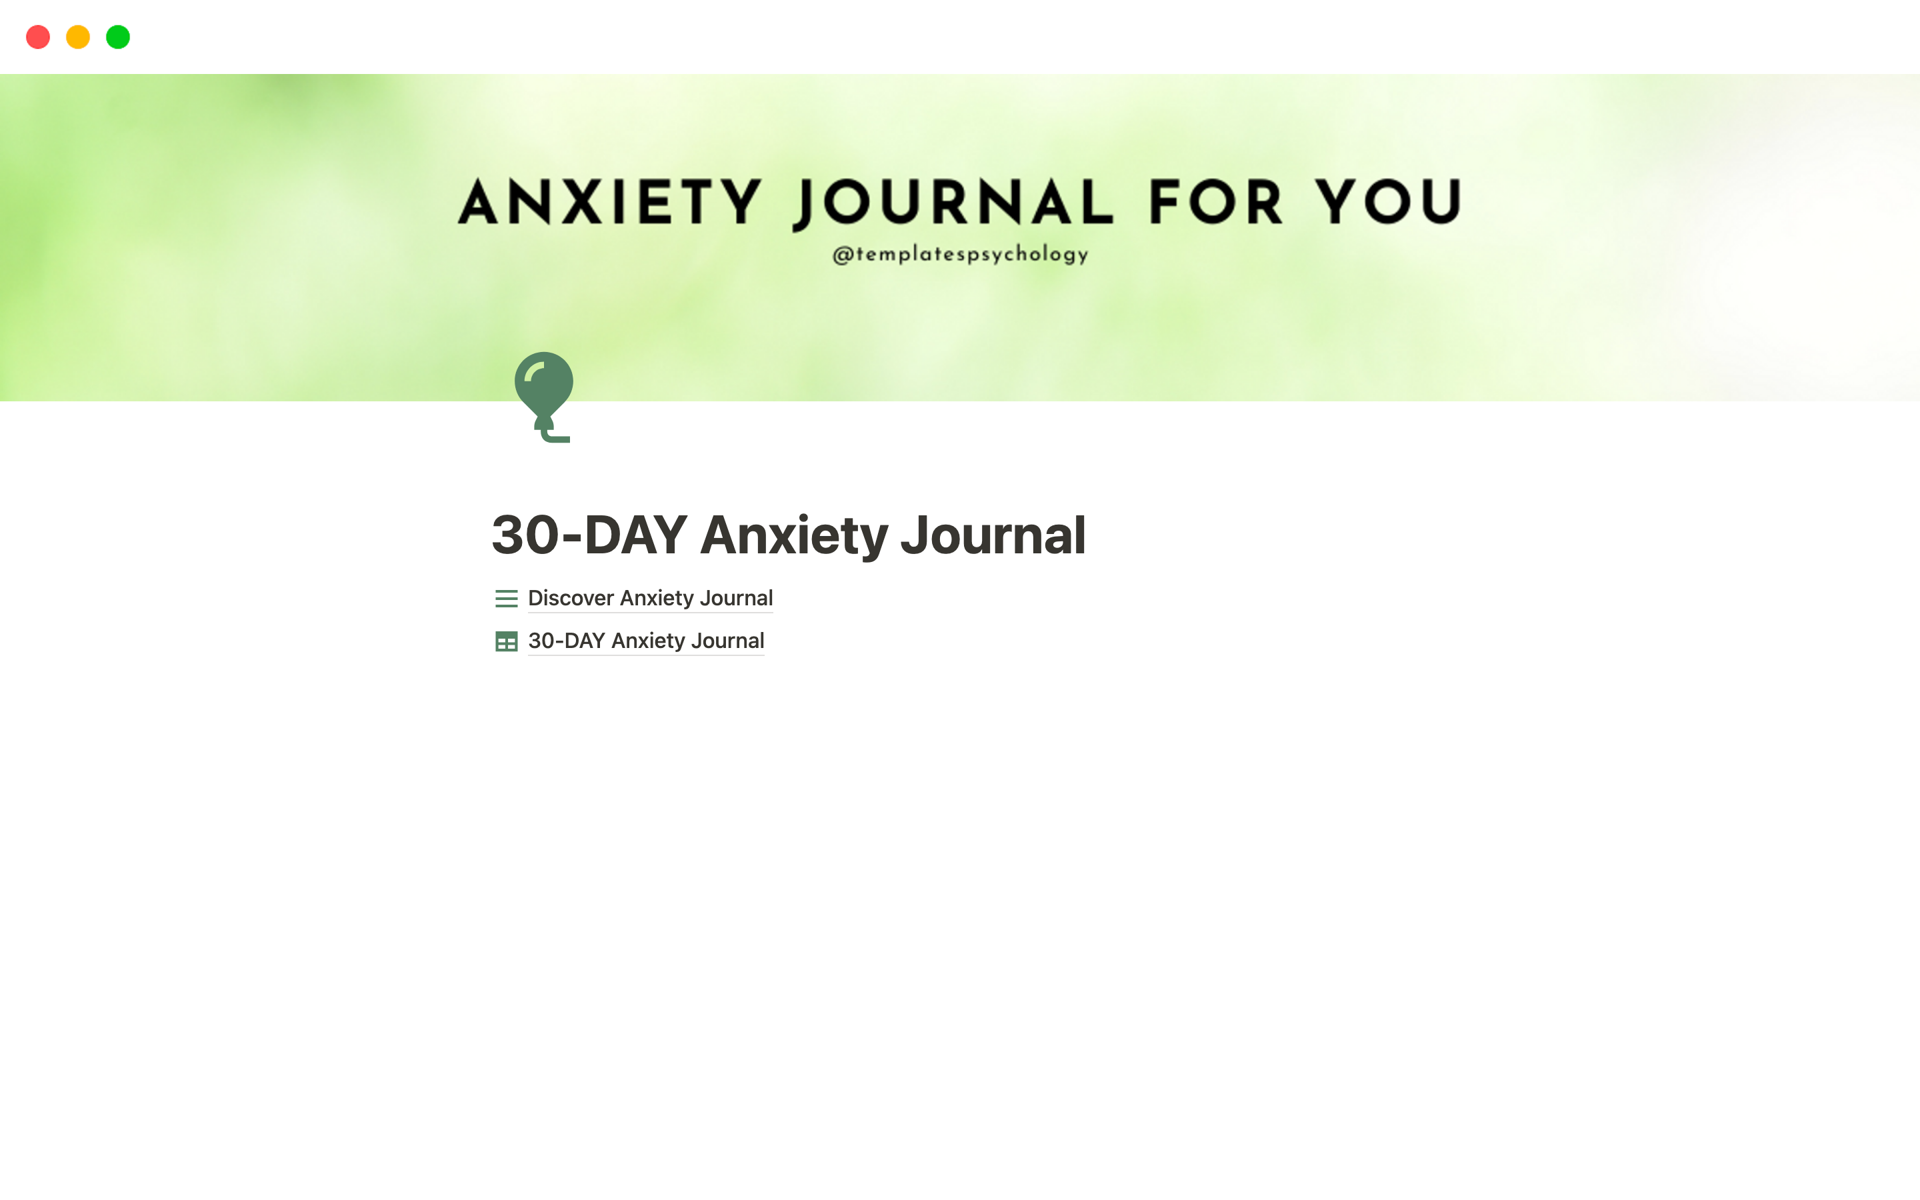 En förhandsgranskning av mallen för 30-DAY Anxiety Journal